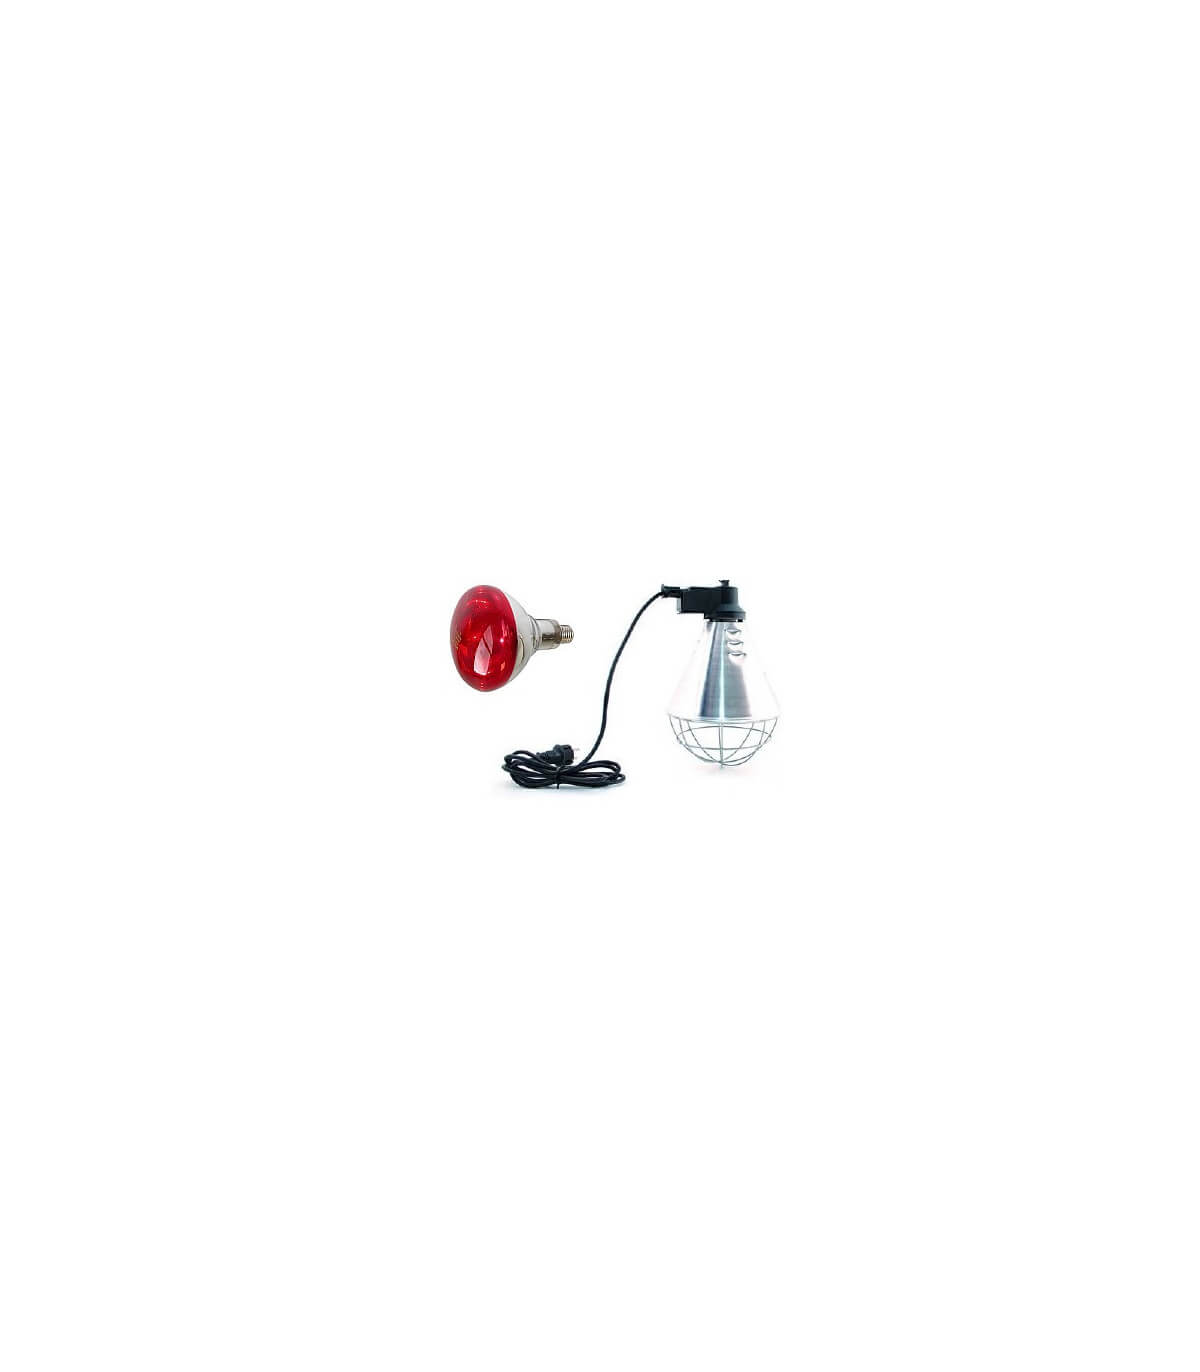 Ampoule infrarouge rouge verre renforcé (E27) - Lampes chauffantes -  Volailles